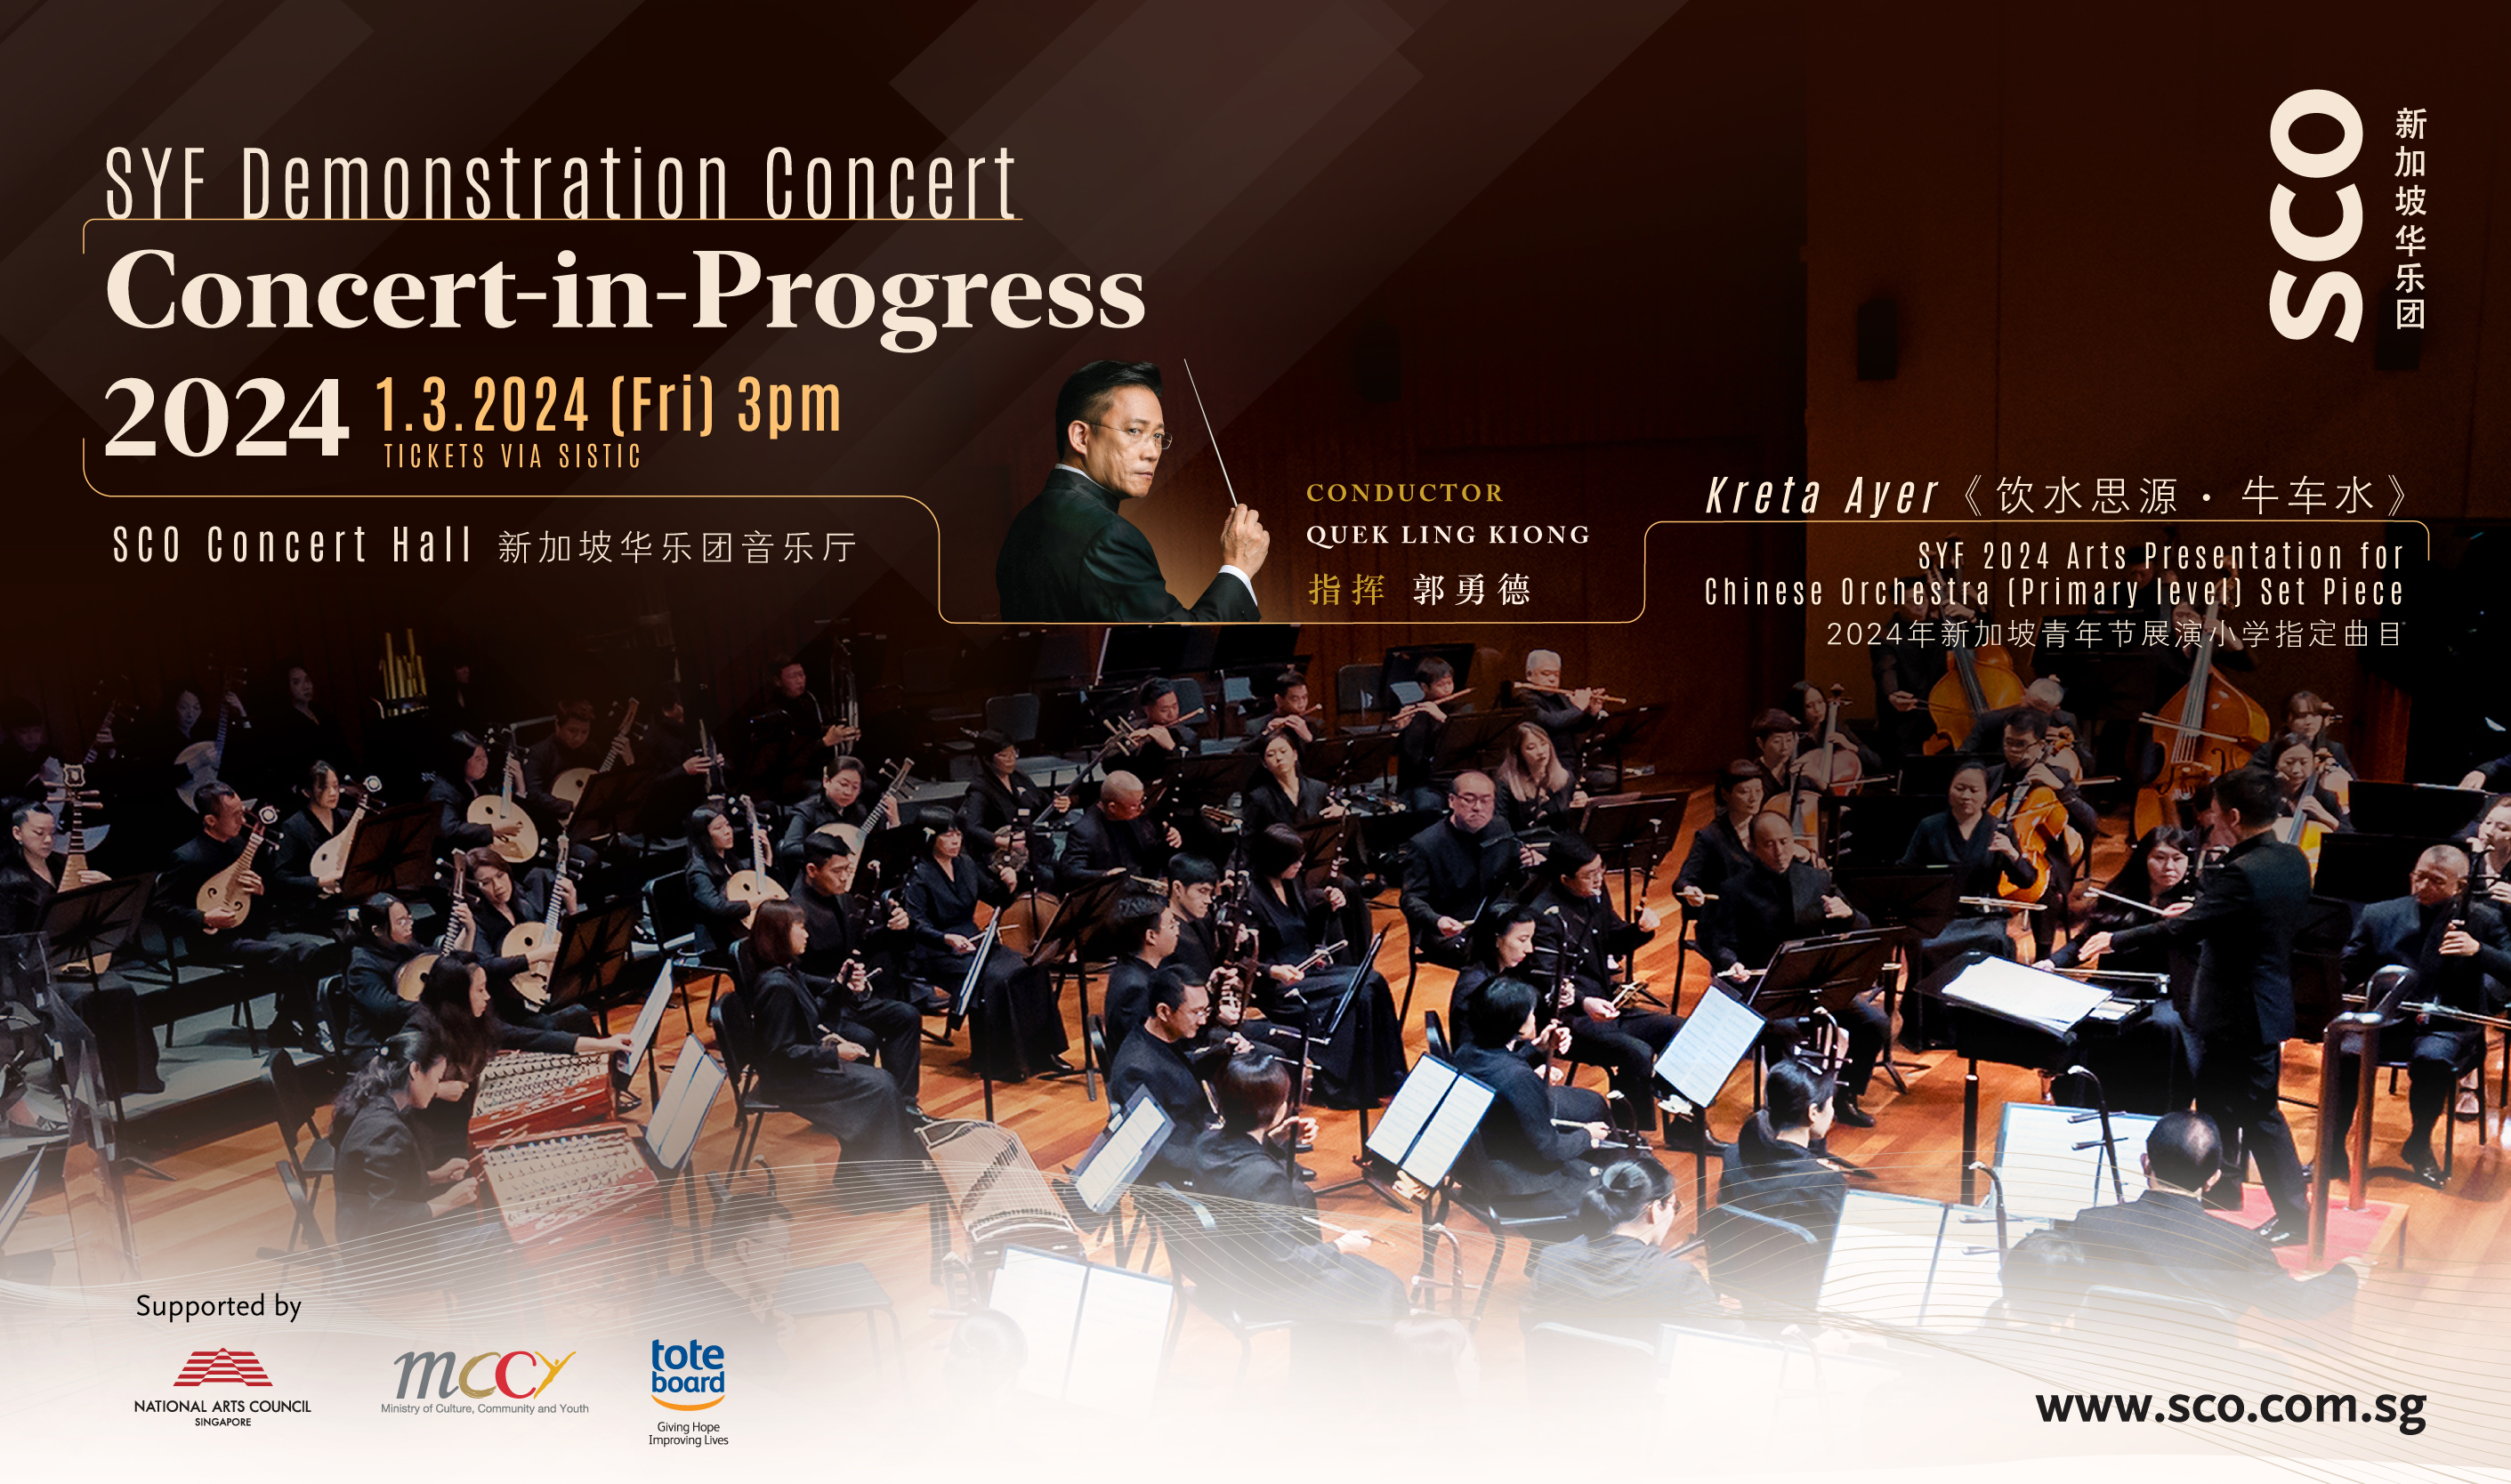 Concert-in-Progress: SYF Demonstration Concert